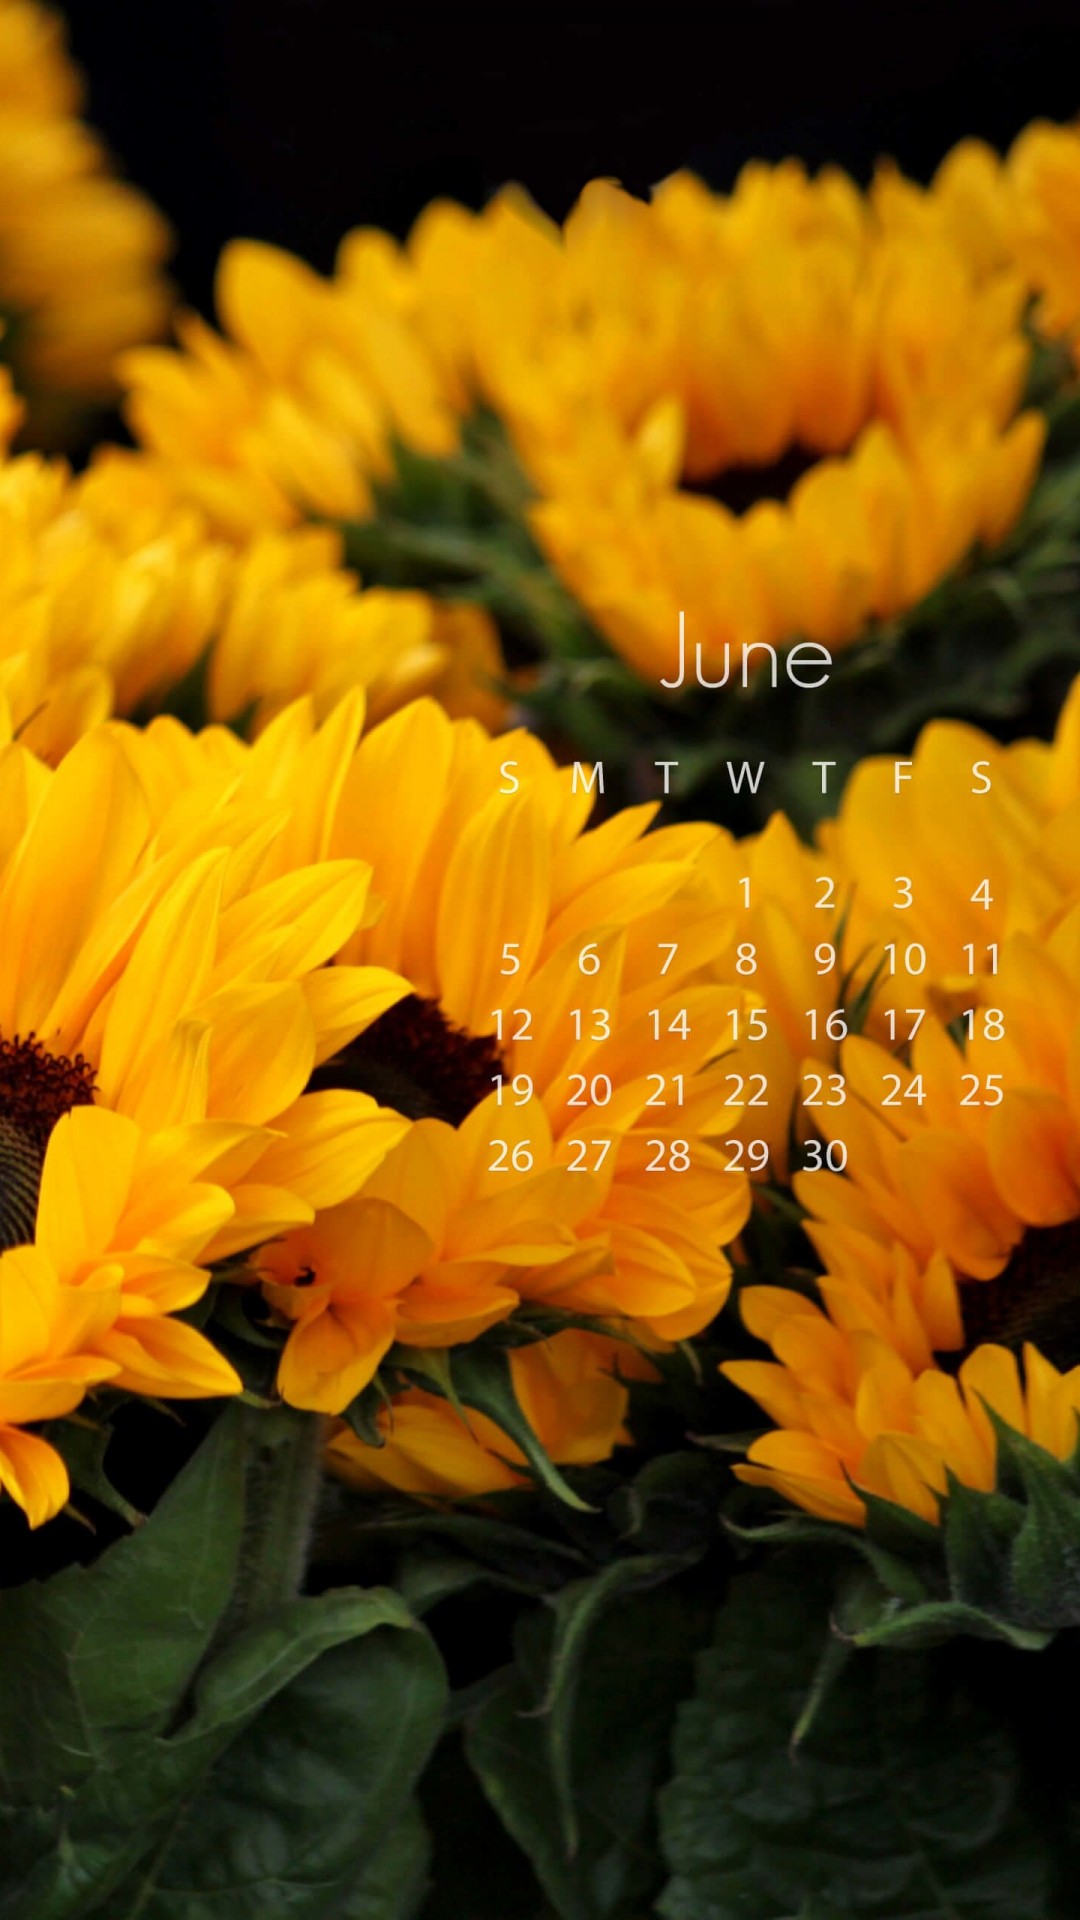 June 2016 Calendar Wallpaper for SAMSUNG Galaxy S5